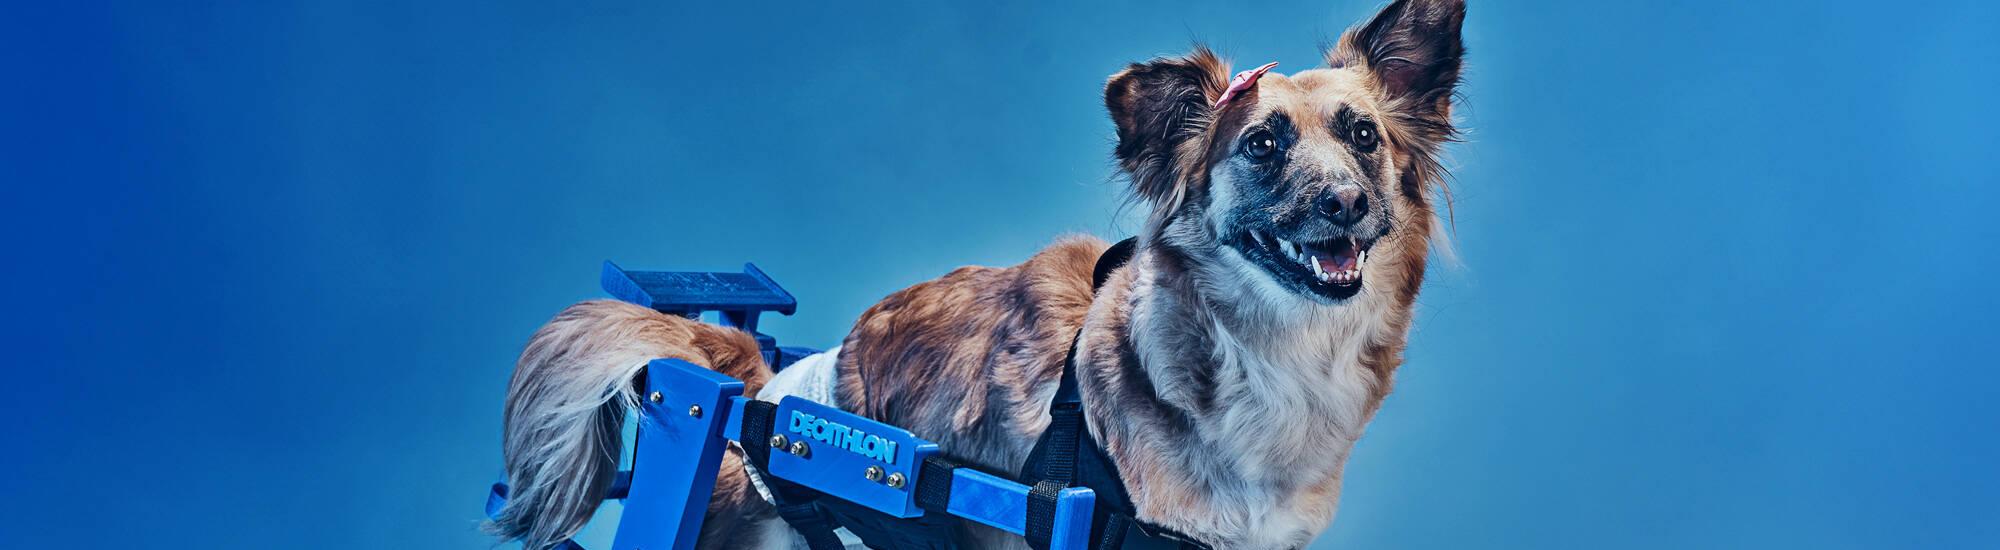 Ритейлер спорттоваров собирает пластик для собачьих протезов 